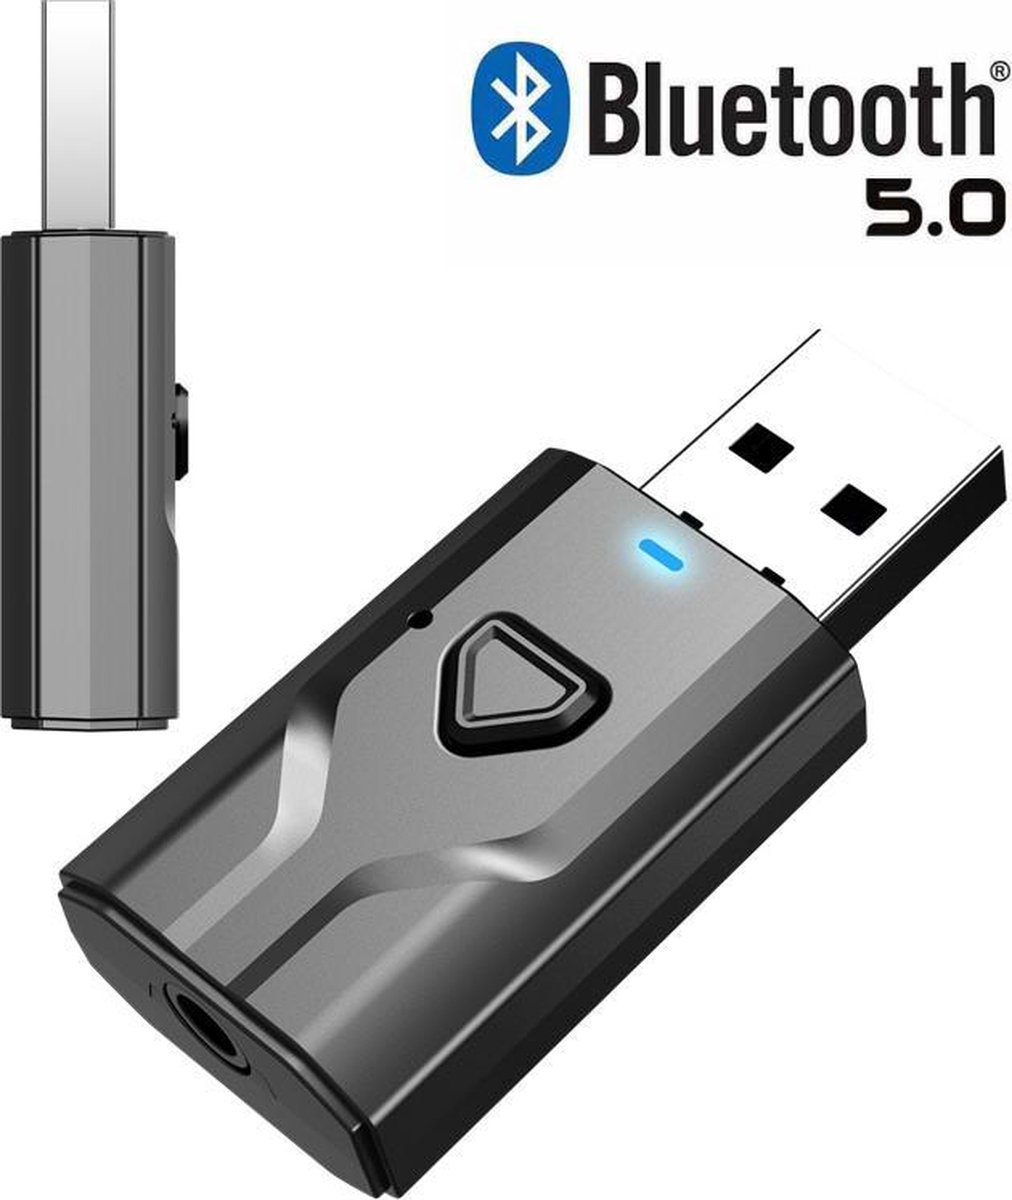 2 in 1 USB Bluetooth 5.0 Zender en Ontvanger - Bereik tot 15 Meter - Draadloze Audio Adapter - Wireless Transmitter & Receiver voor TV / PC / Auto / Koptelefoon / Luidspreker - MIPRO